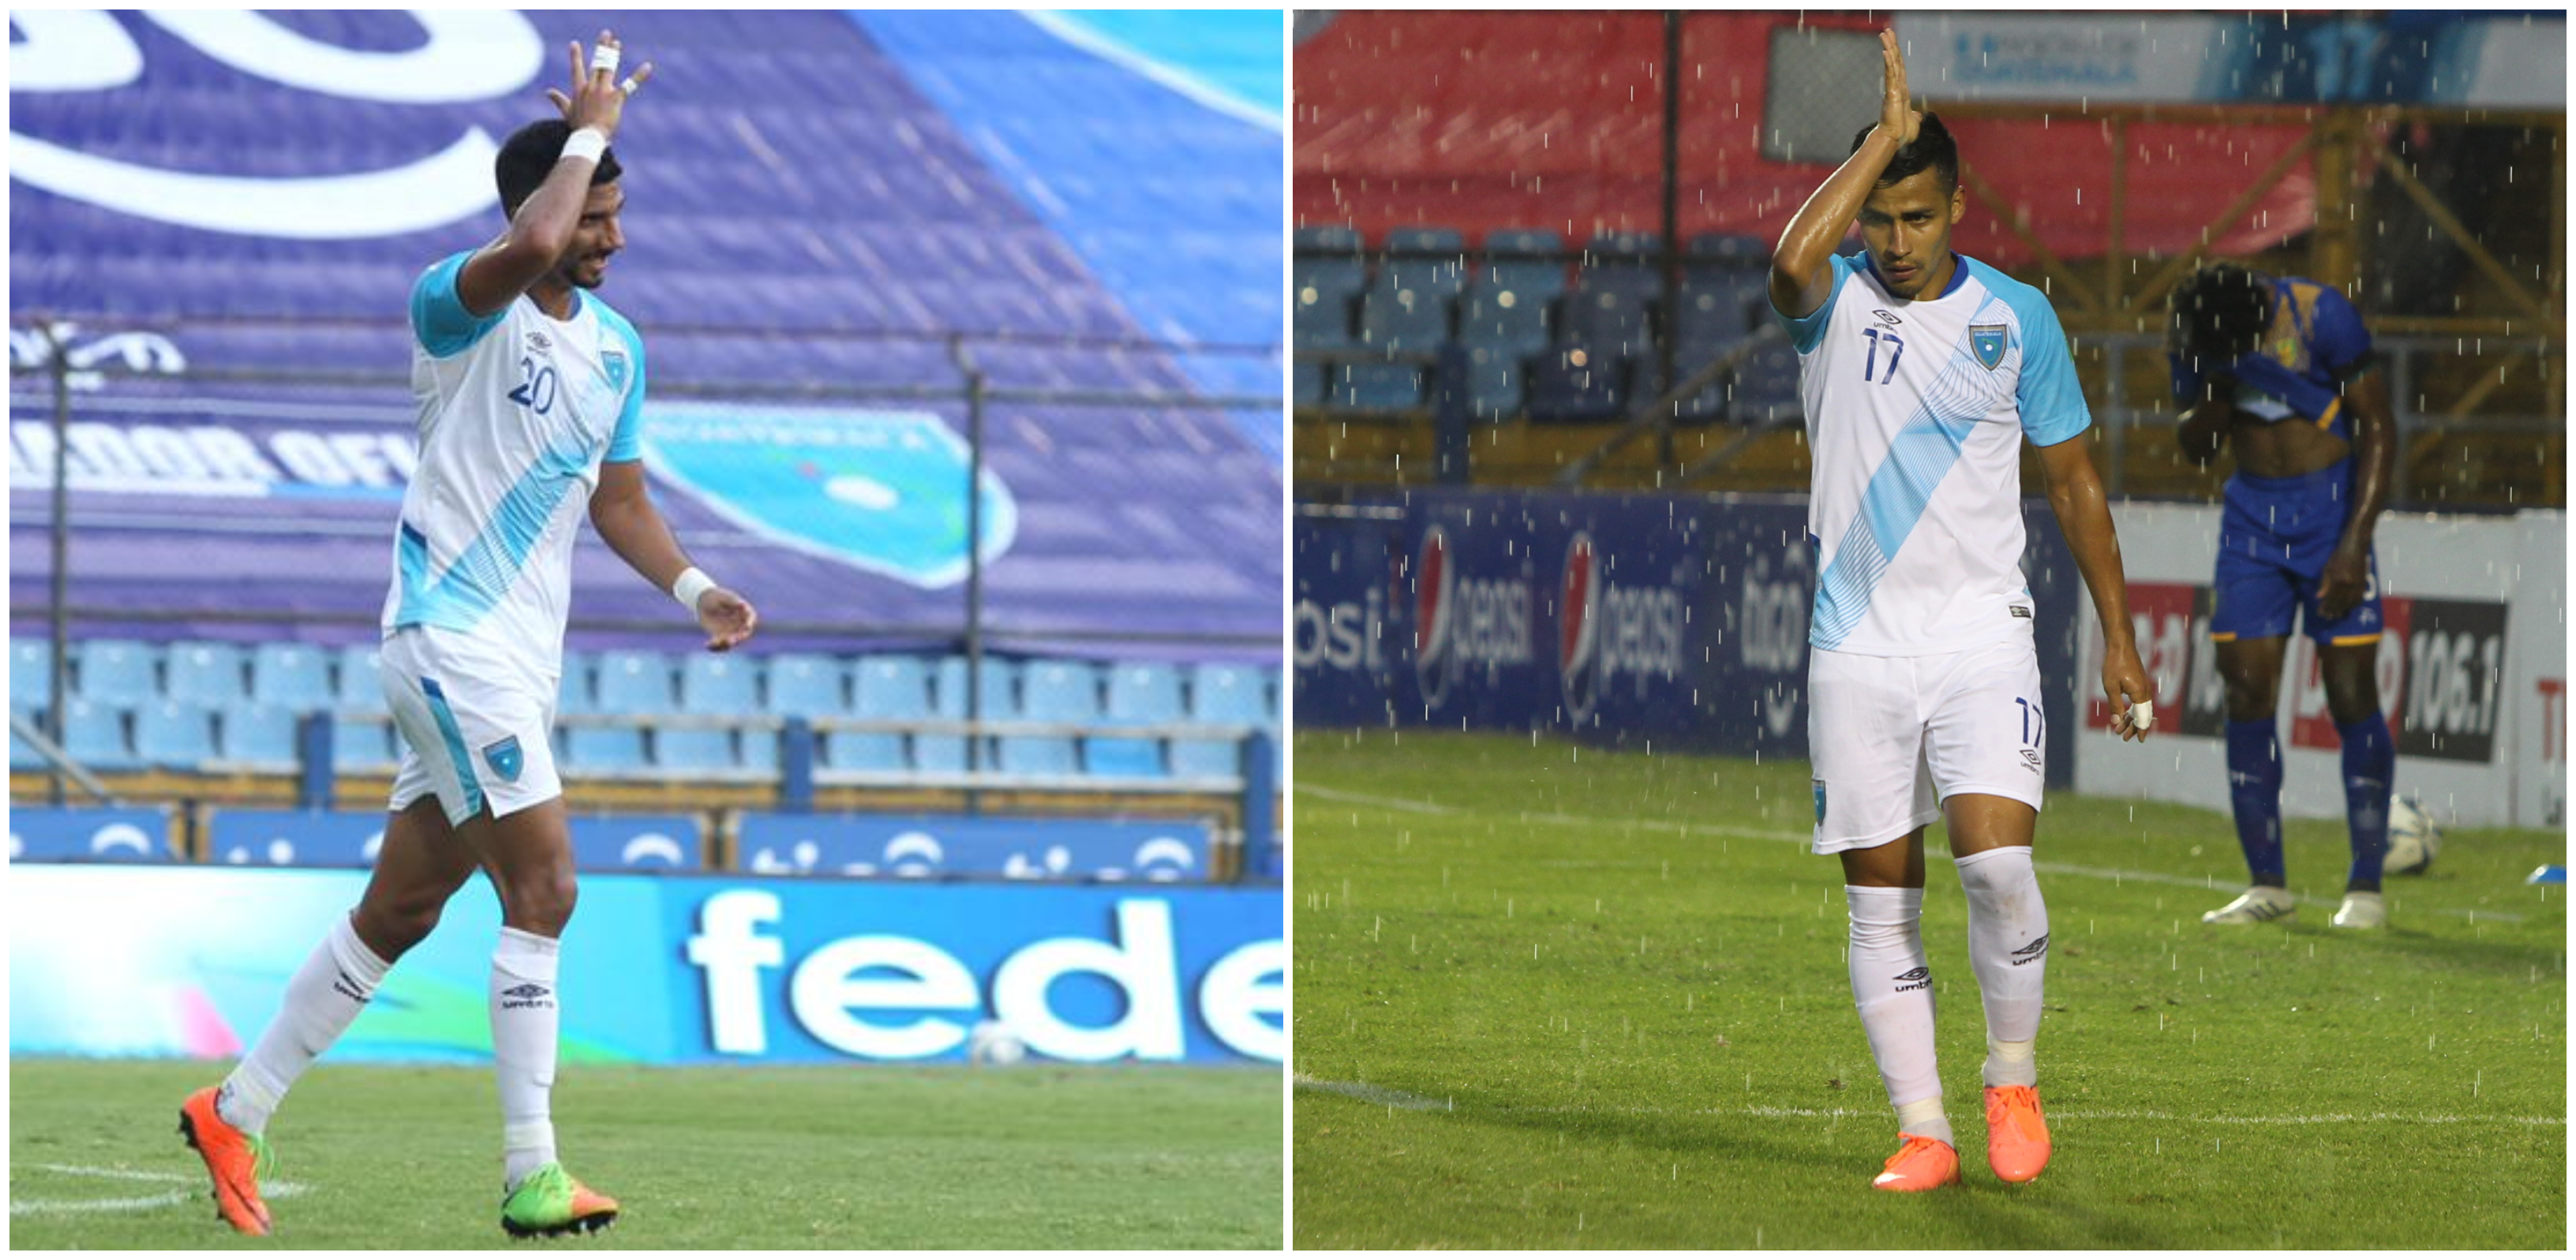 Gerardo Gordillo (20) y Luis Martínez recordaron a Carlos "el Pescado" Ruiz después de anotar sus respectivos goles ante San Vicente y las Granadinas. El marcador final fue de 10-0.